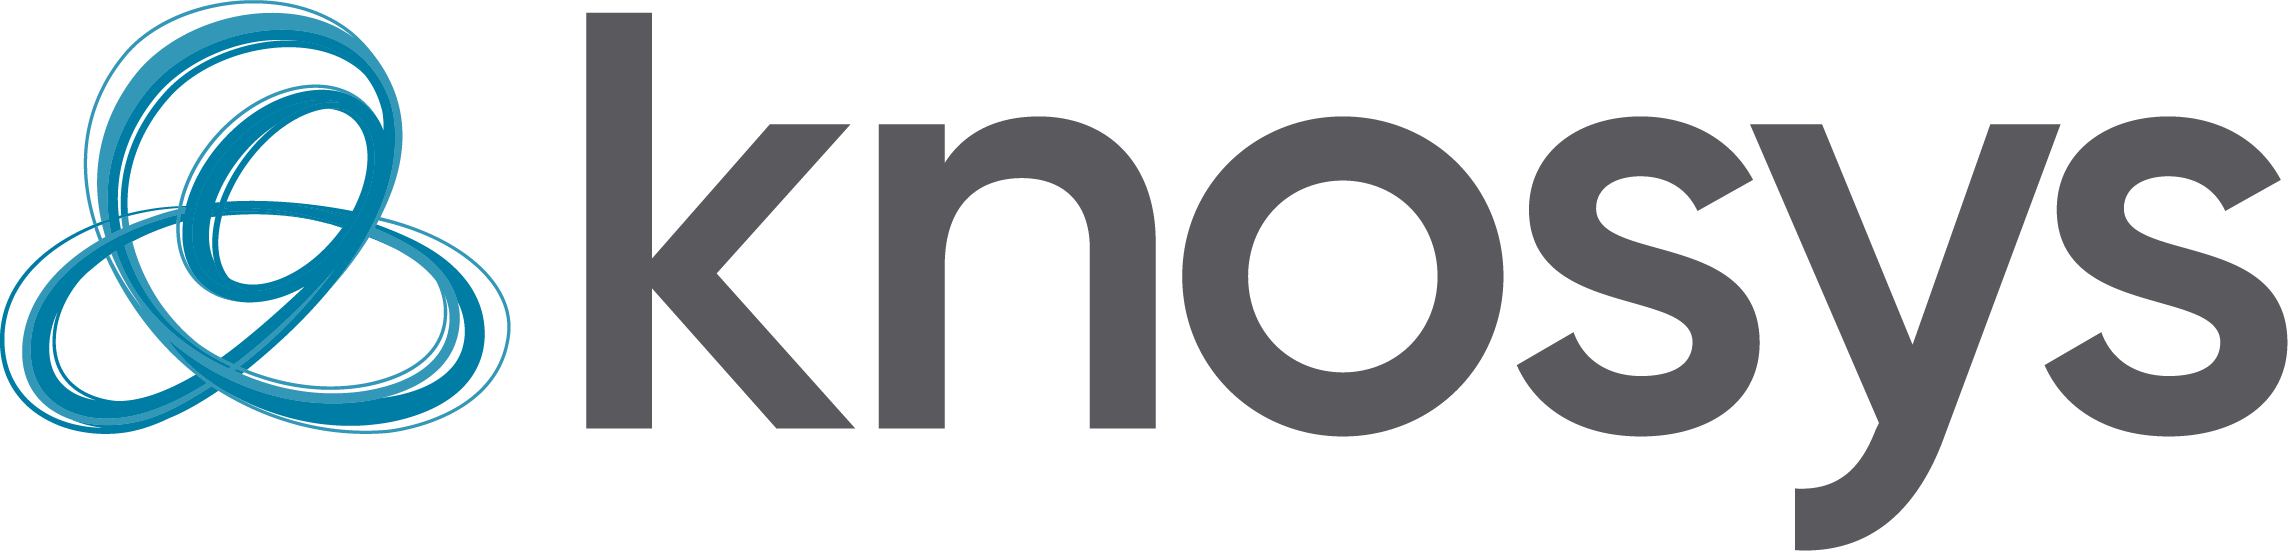 knosys logo